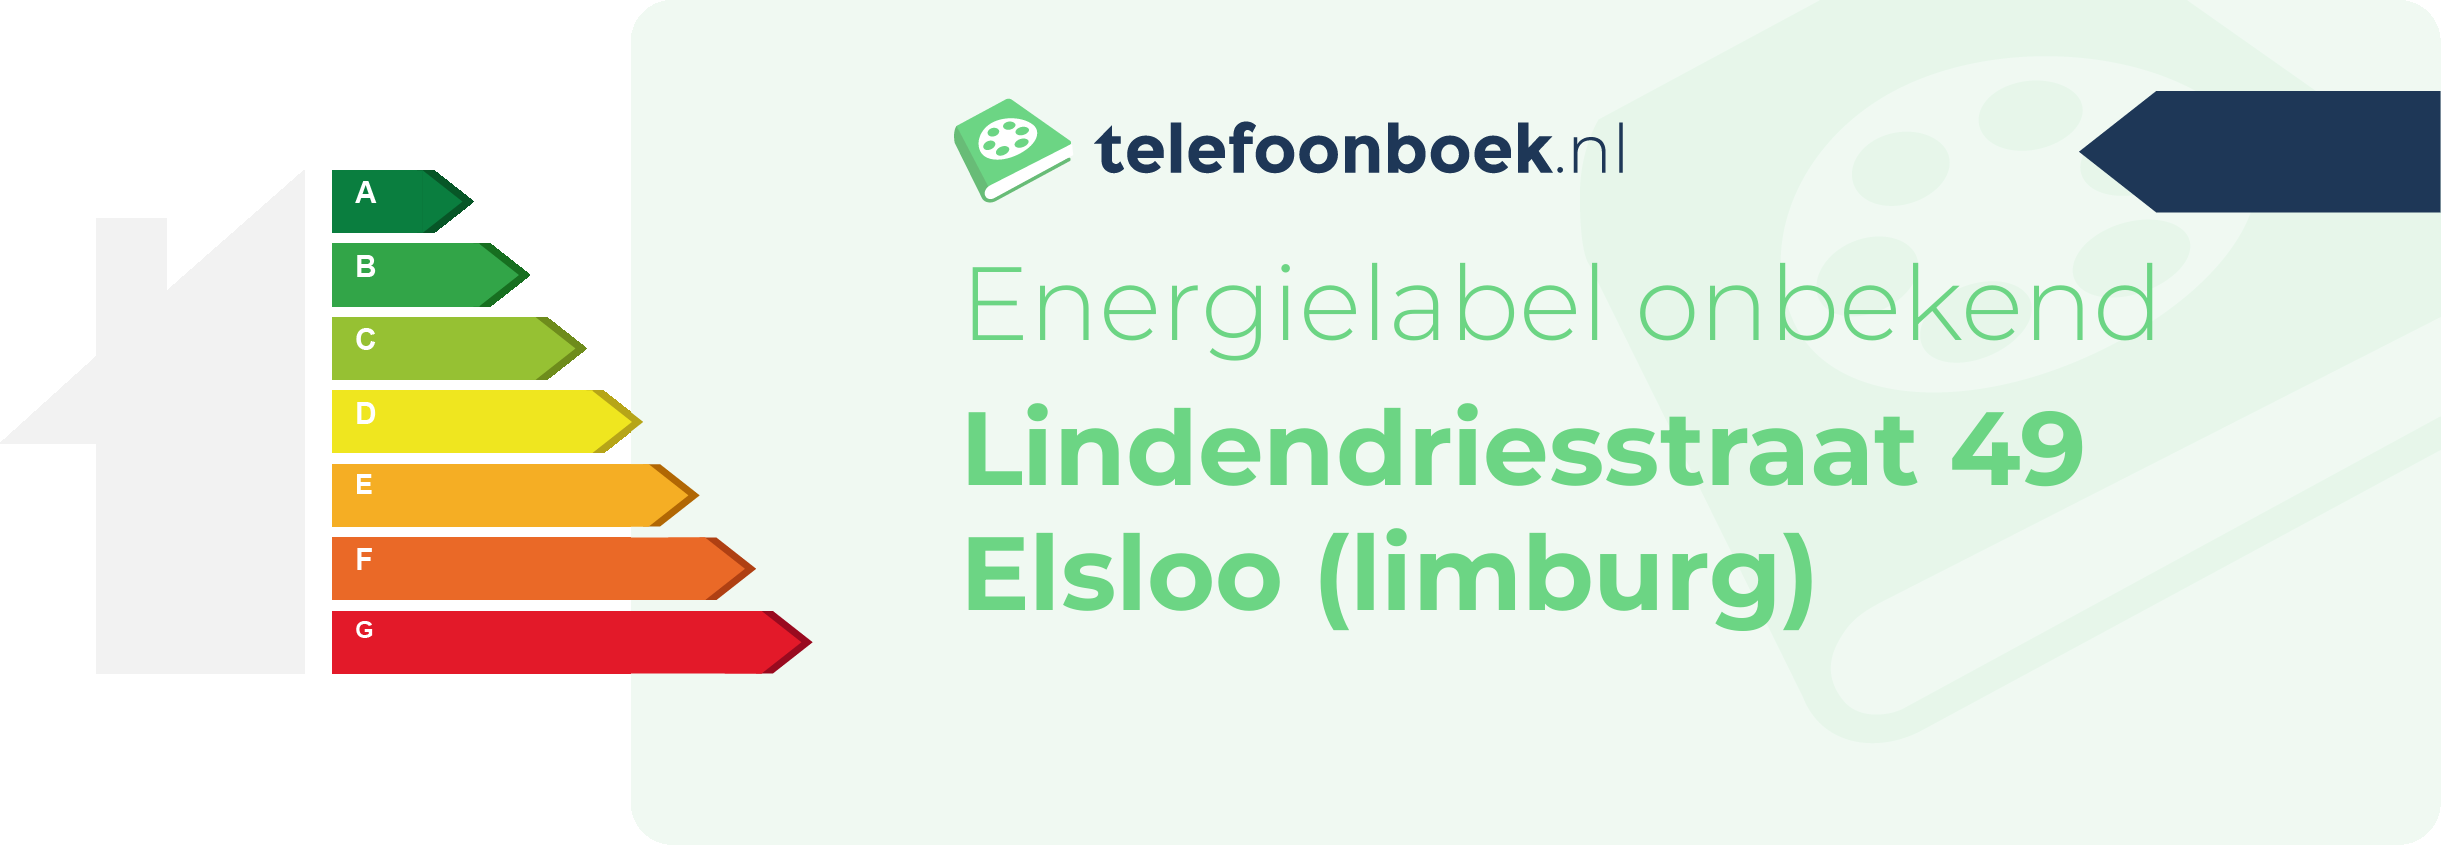 Energielabel Lindendriesstraat 49 Elsloo (Limburg)